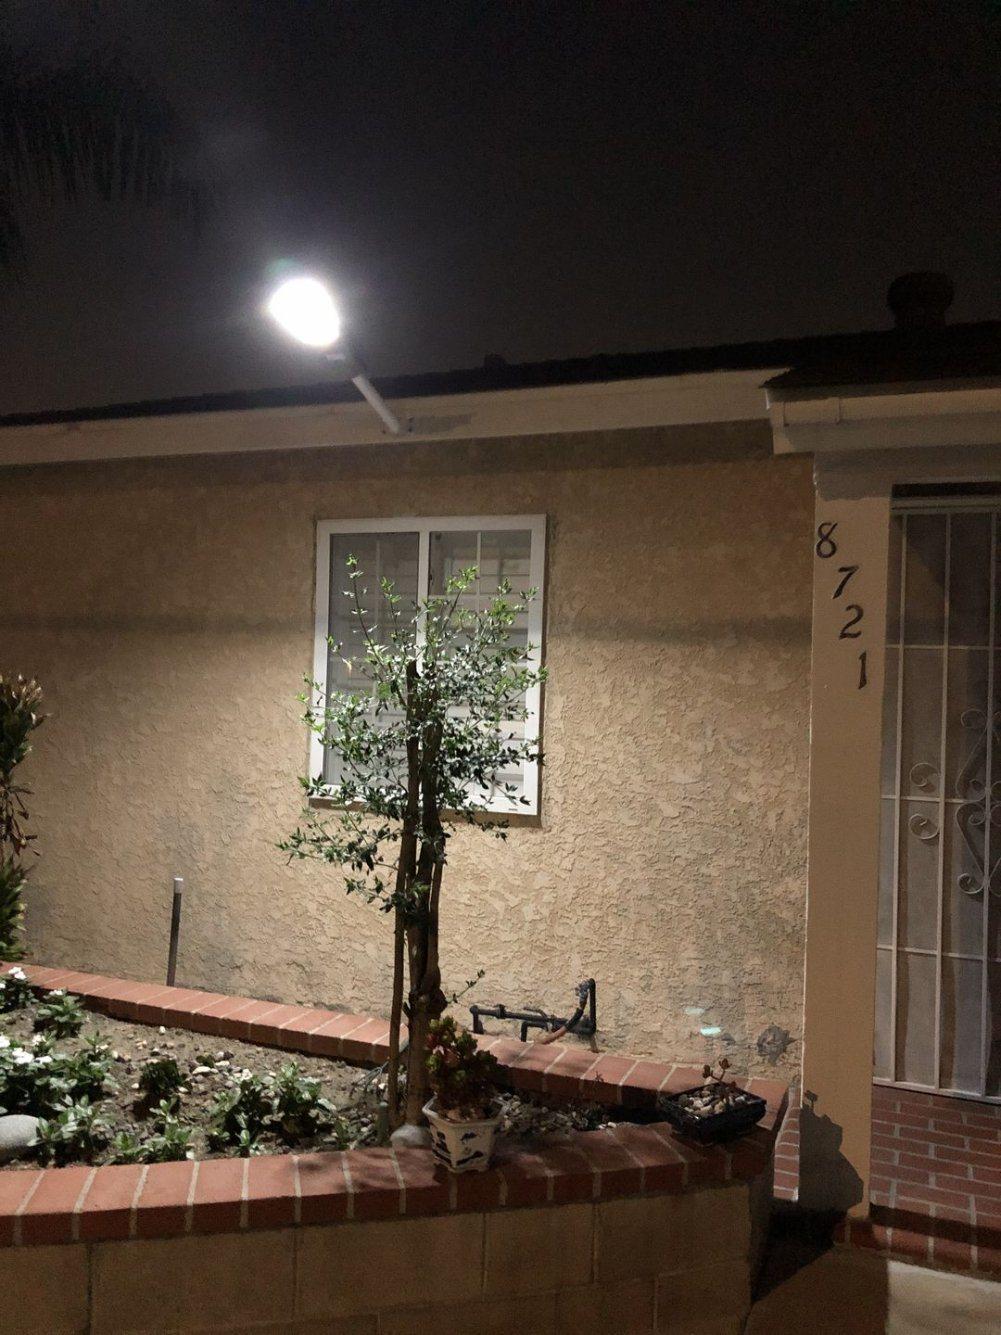 Super Bright LED Sunpower Solar Street Light for Garden Outdoor